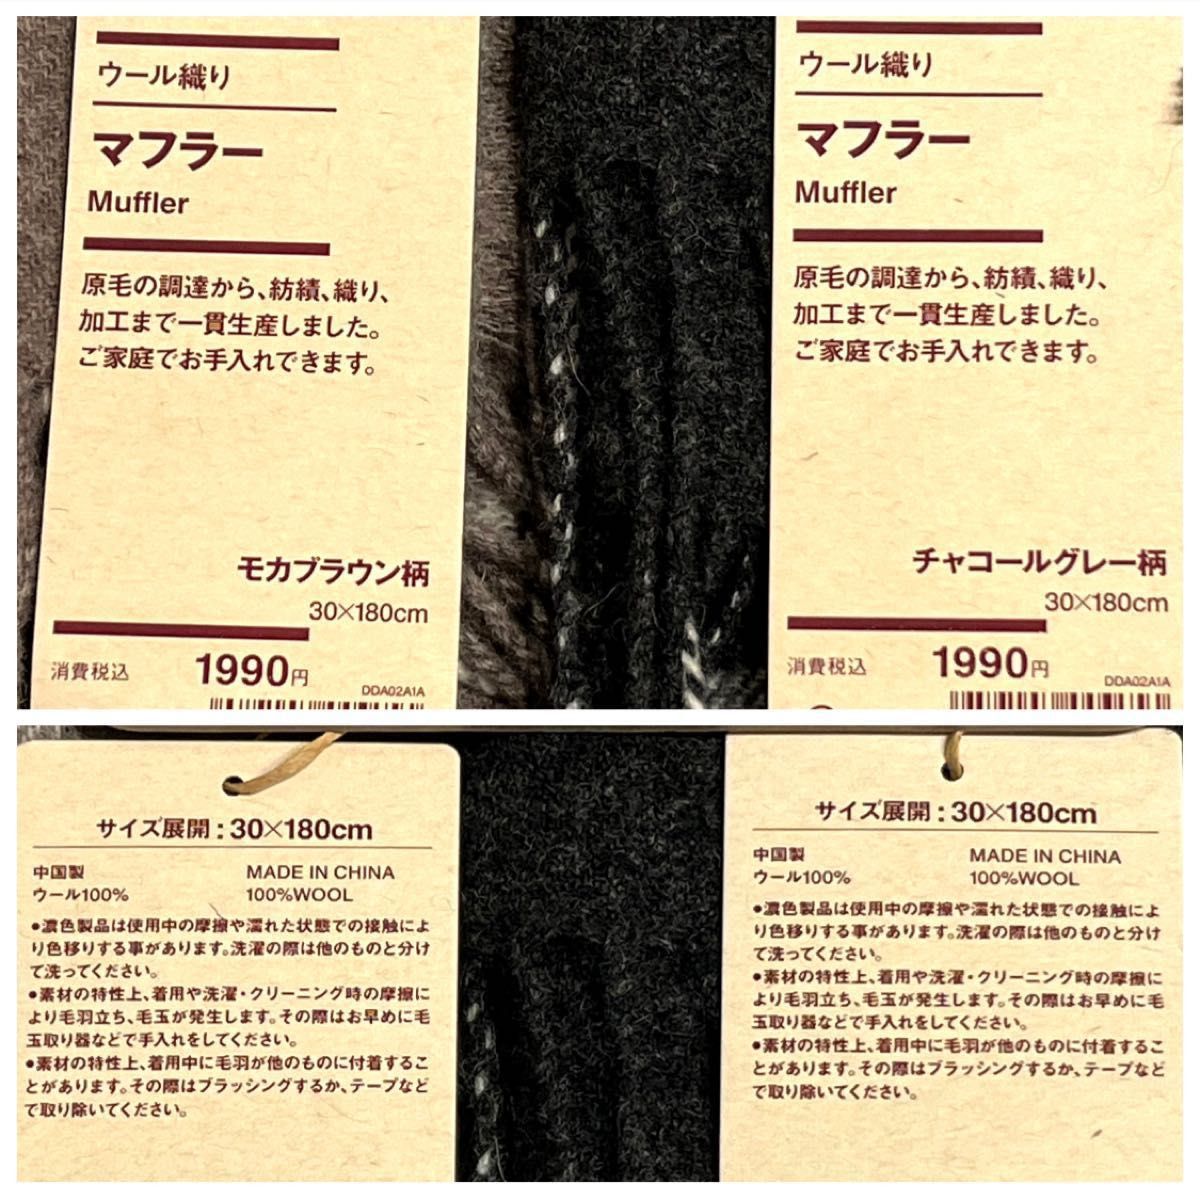 【無印良品】ウール織りマフラー2本セット/パターン30x180cm モカ/グレー